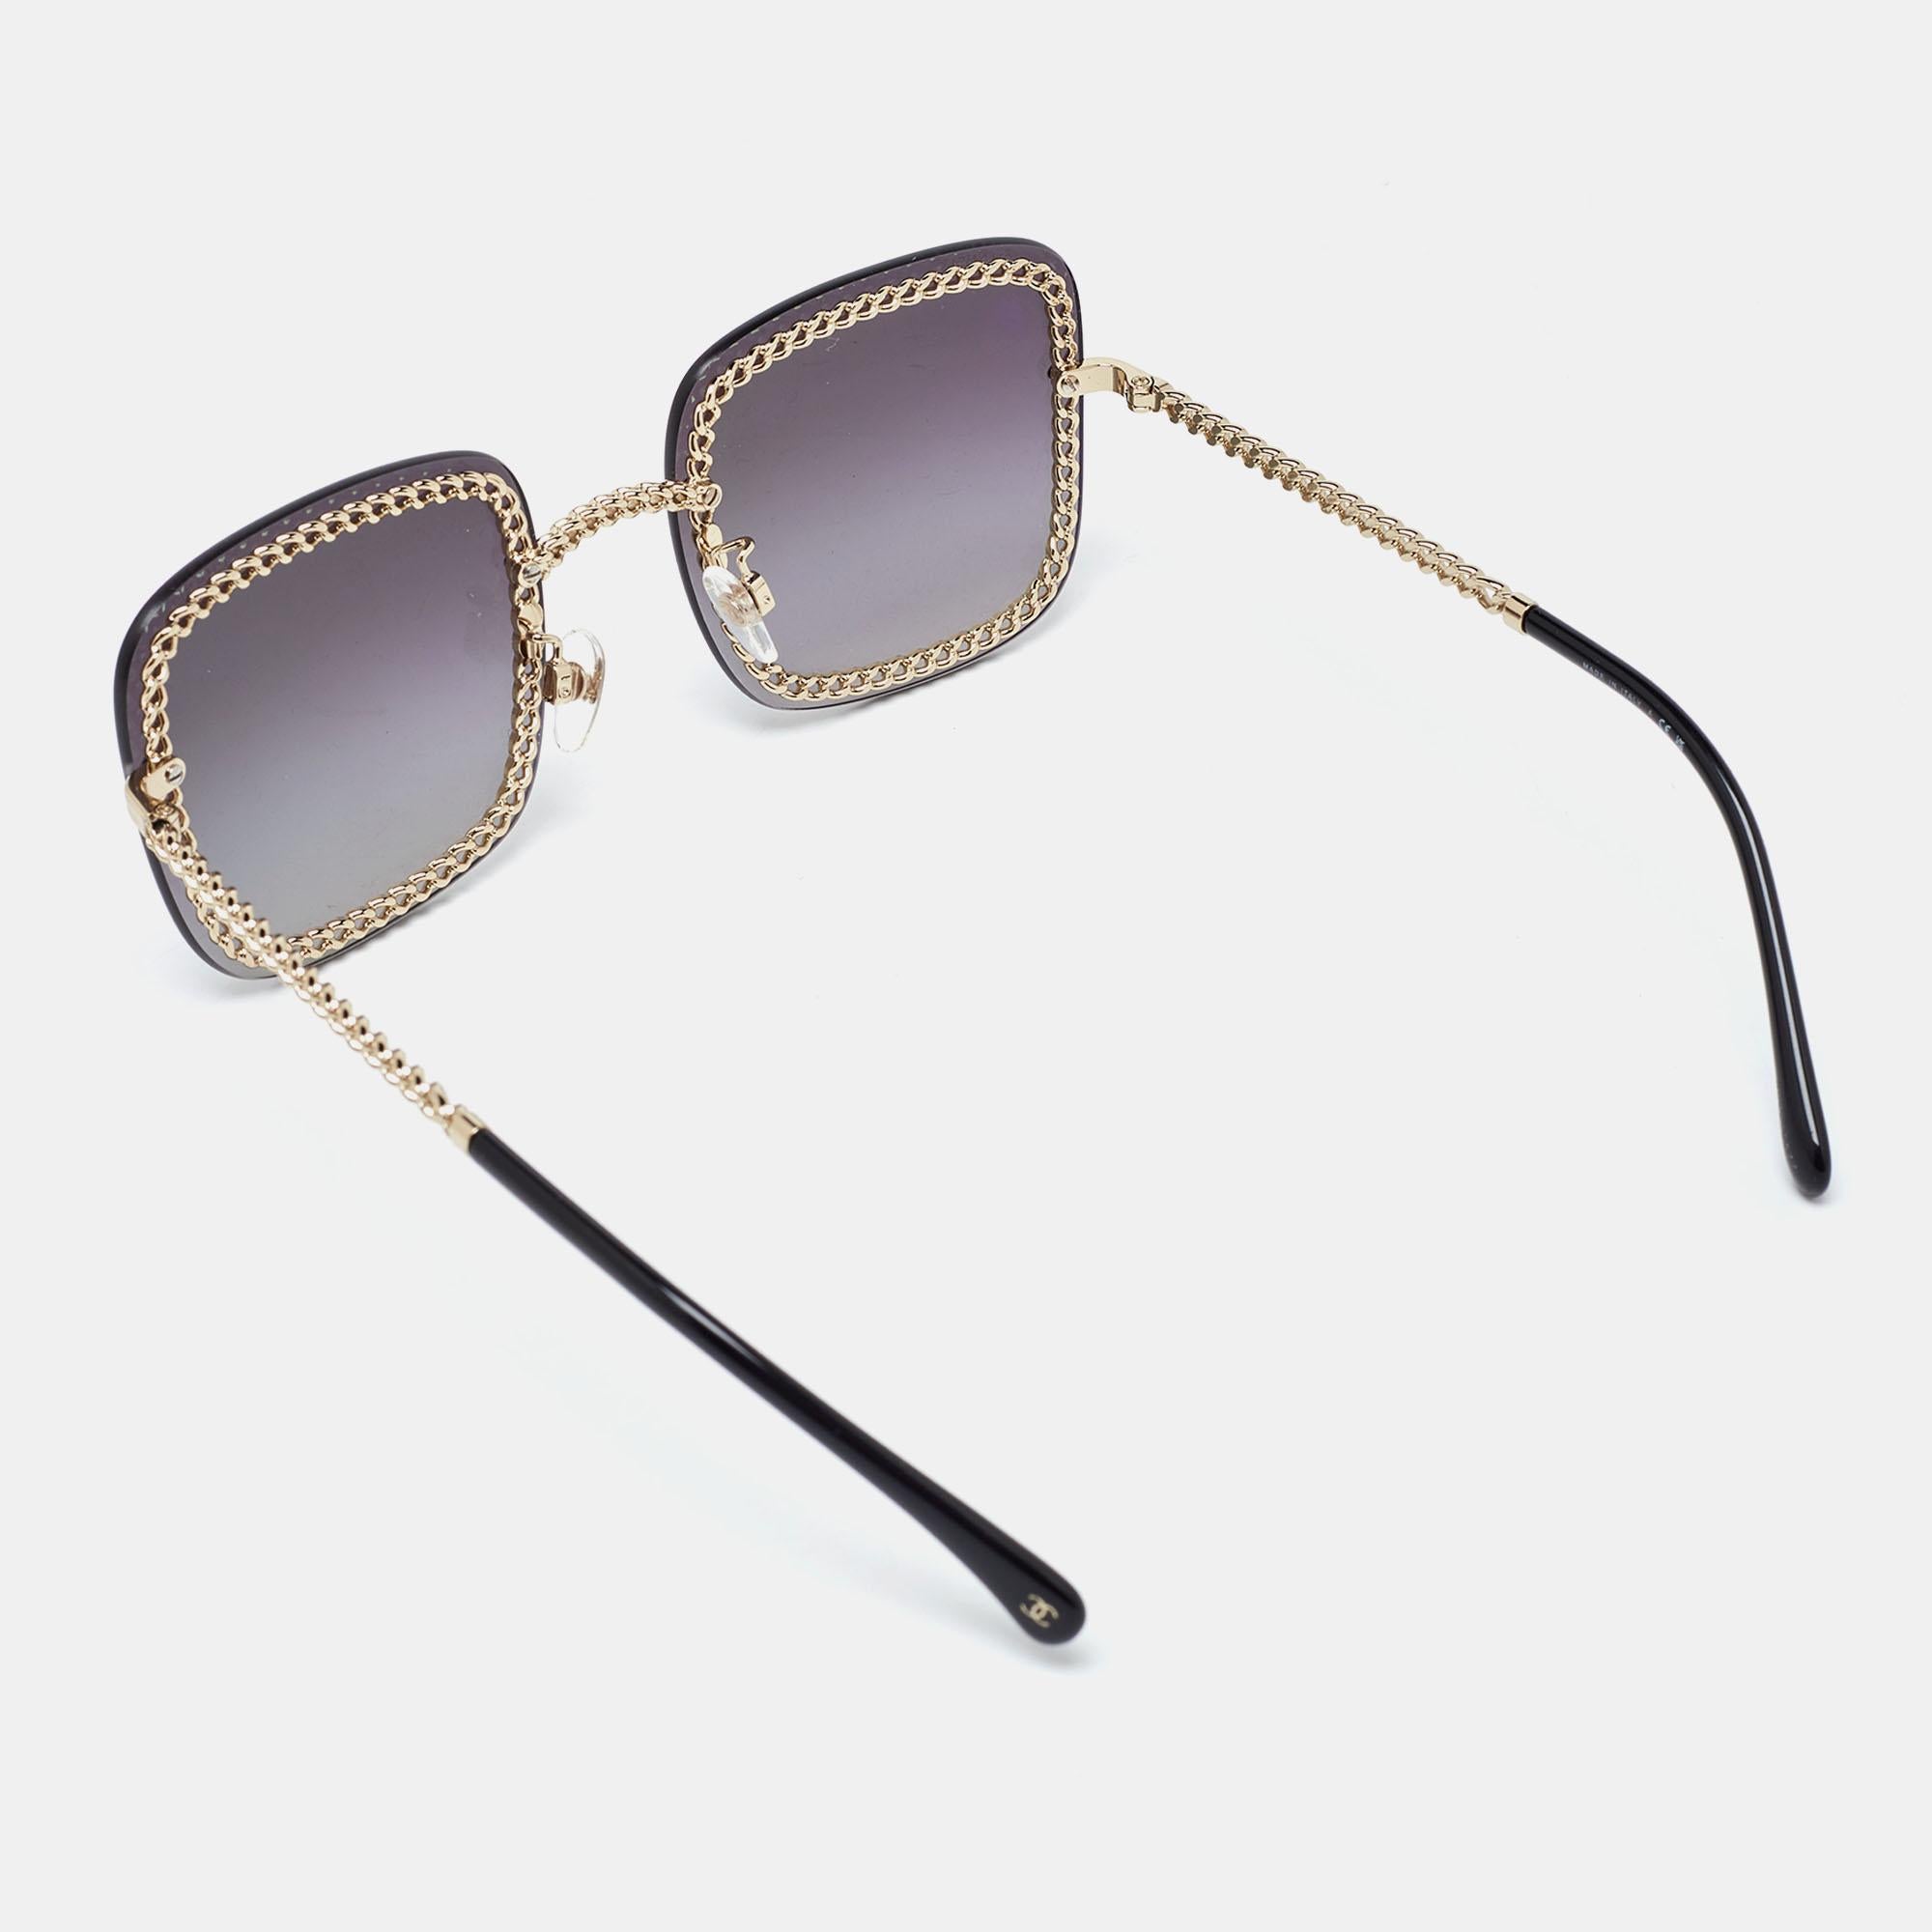 Eine auffällige Sonnenbrille von Chanel ist mit Sicherheit ein wertvoller Kauf. Mit ihrem trendigen Rahmen und den augenschonenden Gläsern ist die Sonnenbrille ideal für den ganzen Tag.

Enthält: Original-Box, Info-Booklet, Original-Staubtuch,